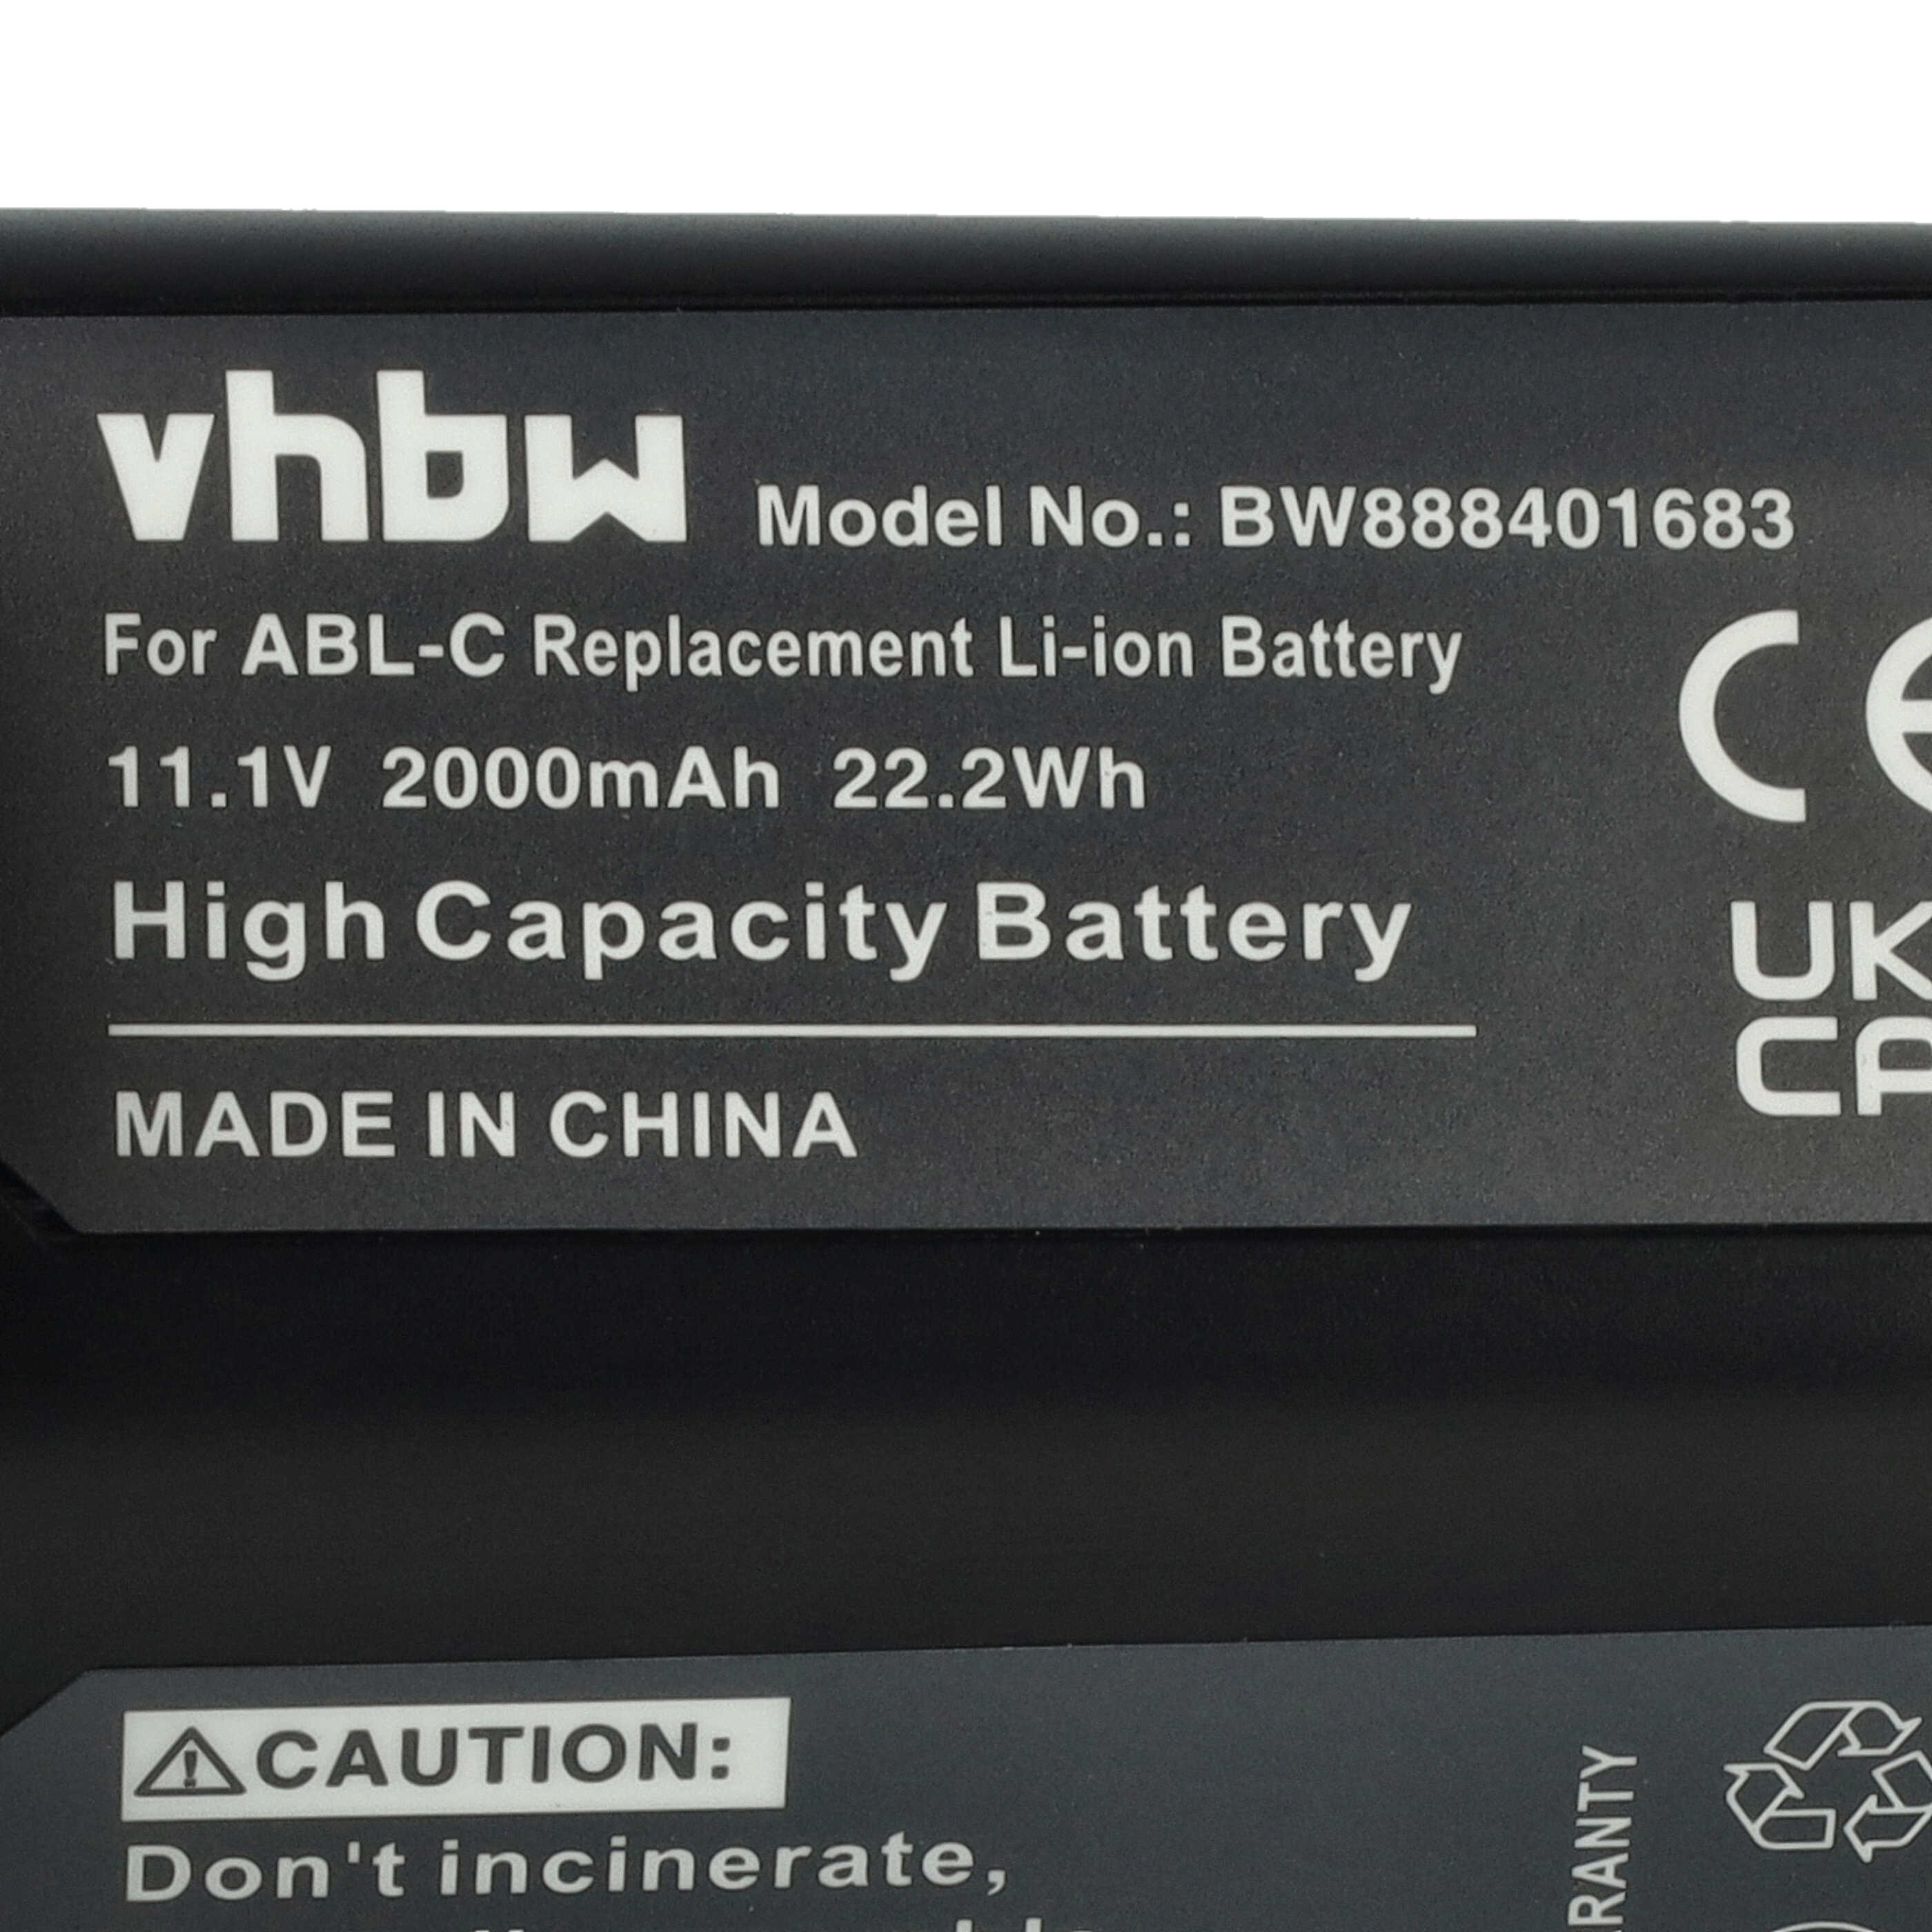 Batterie remplace iRobot M611020, ABL-C pour robot de ménage - 2000mAh 10,8V Li-ion